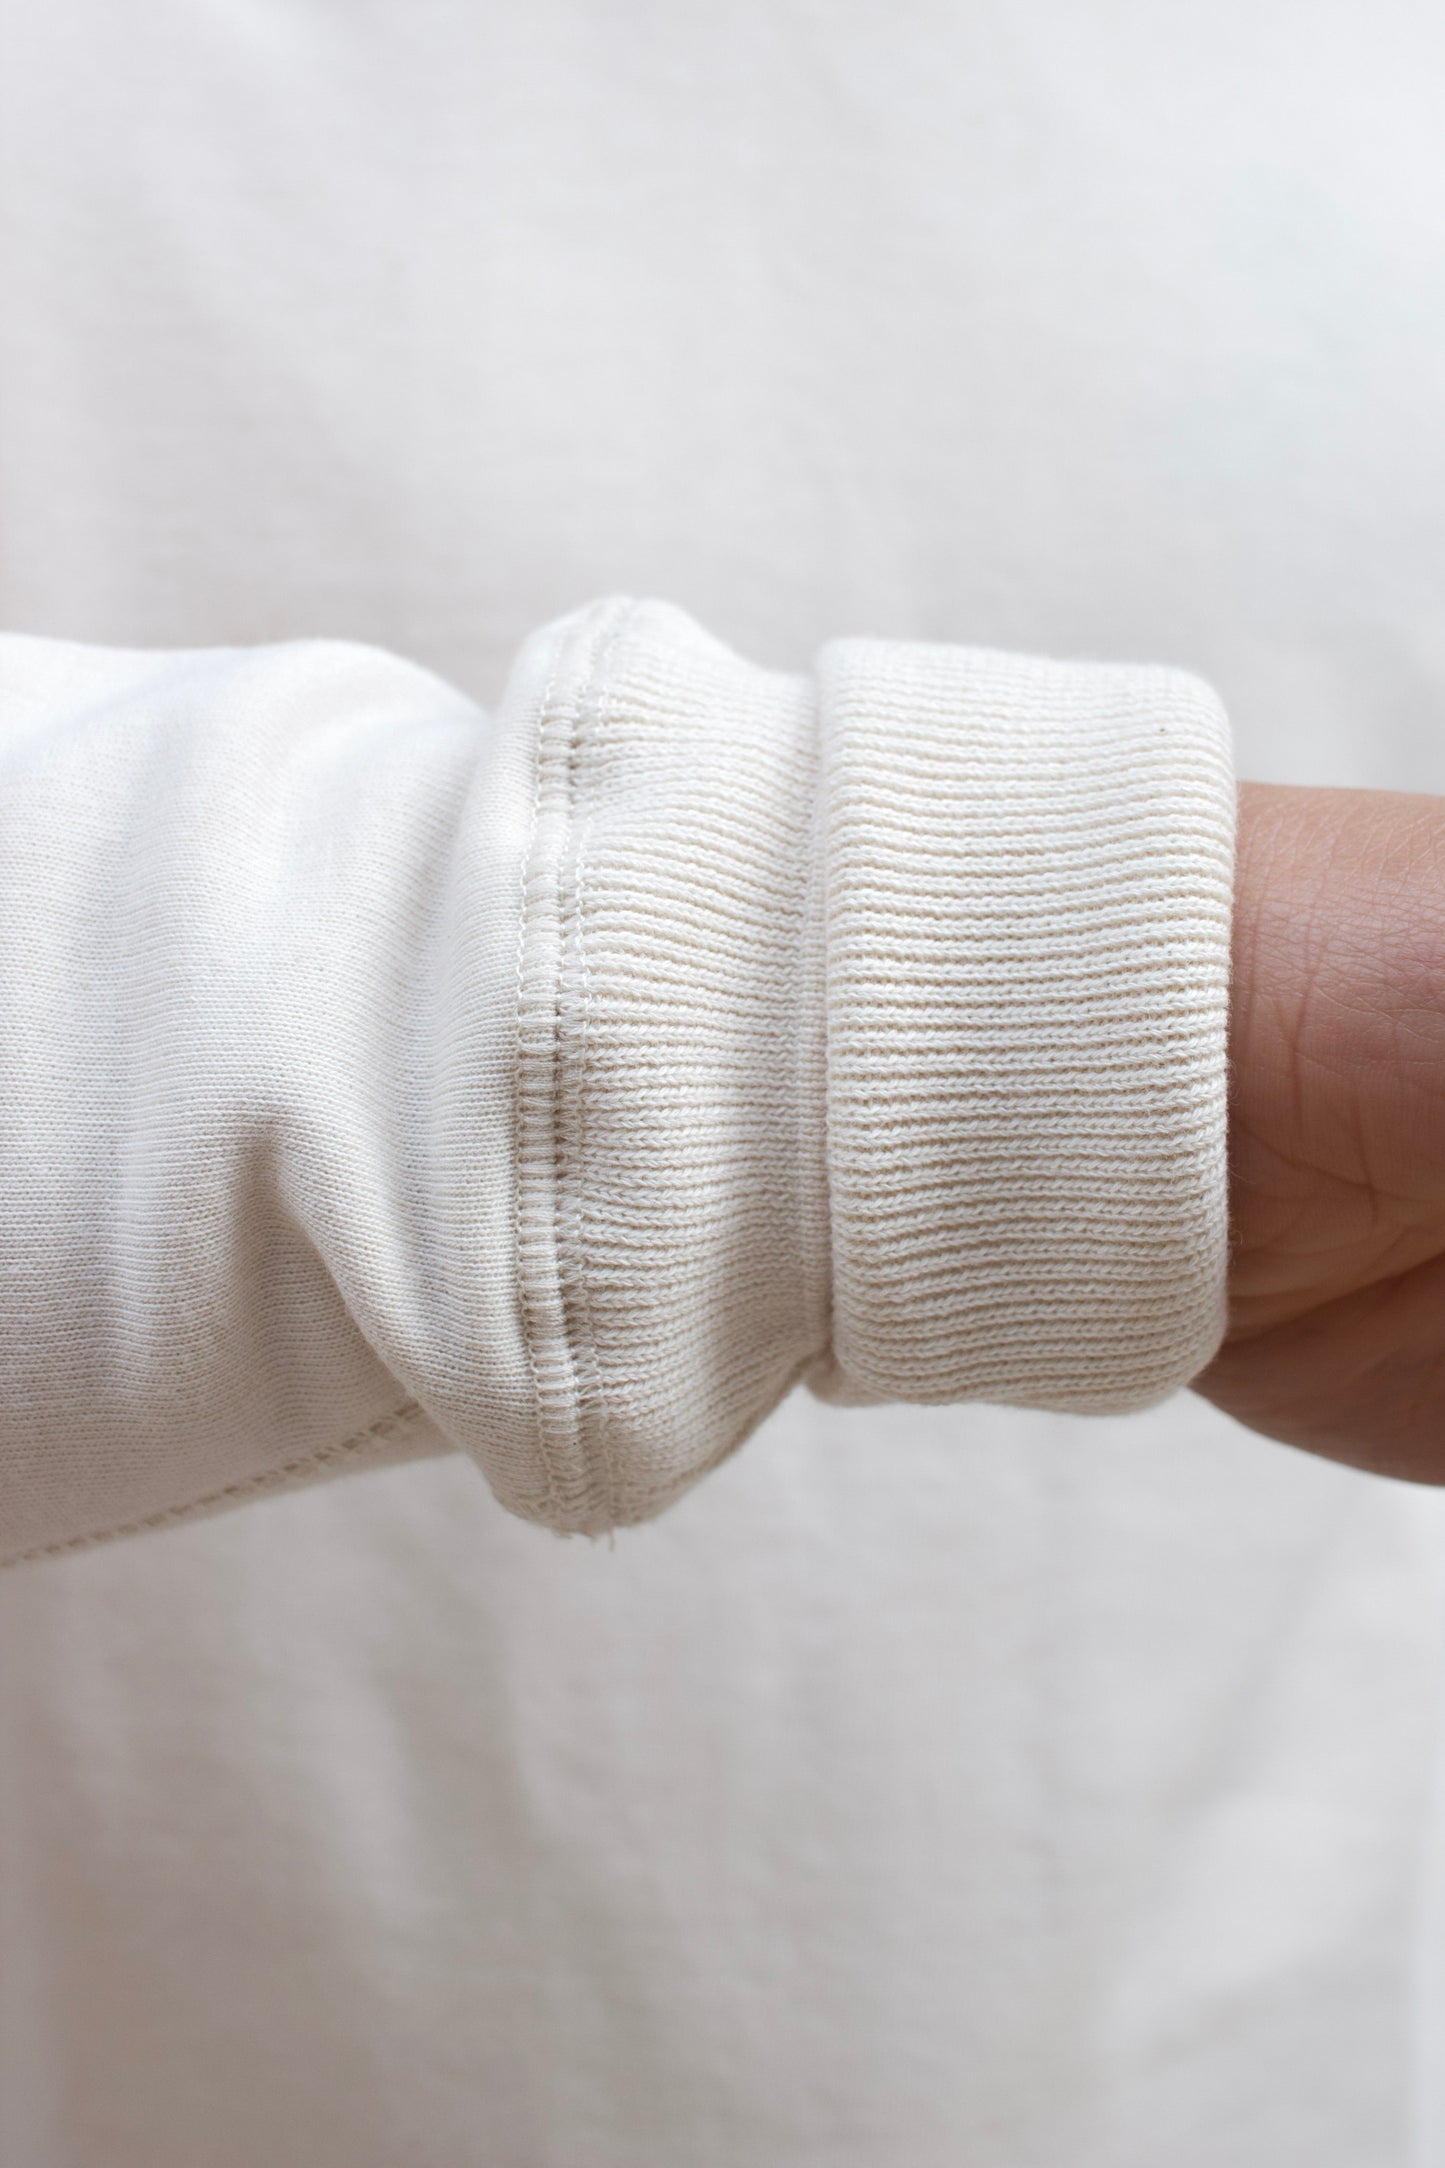 Training Sweater Merino / Cotton - Seashell